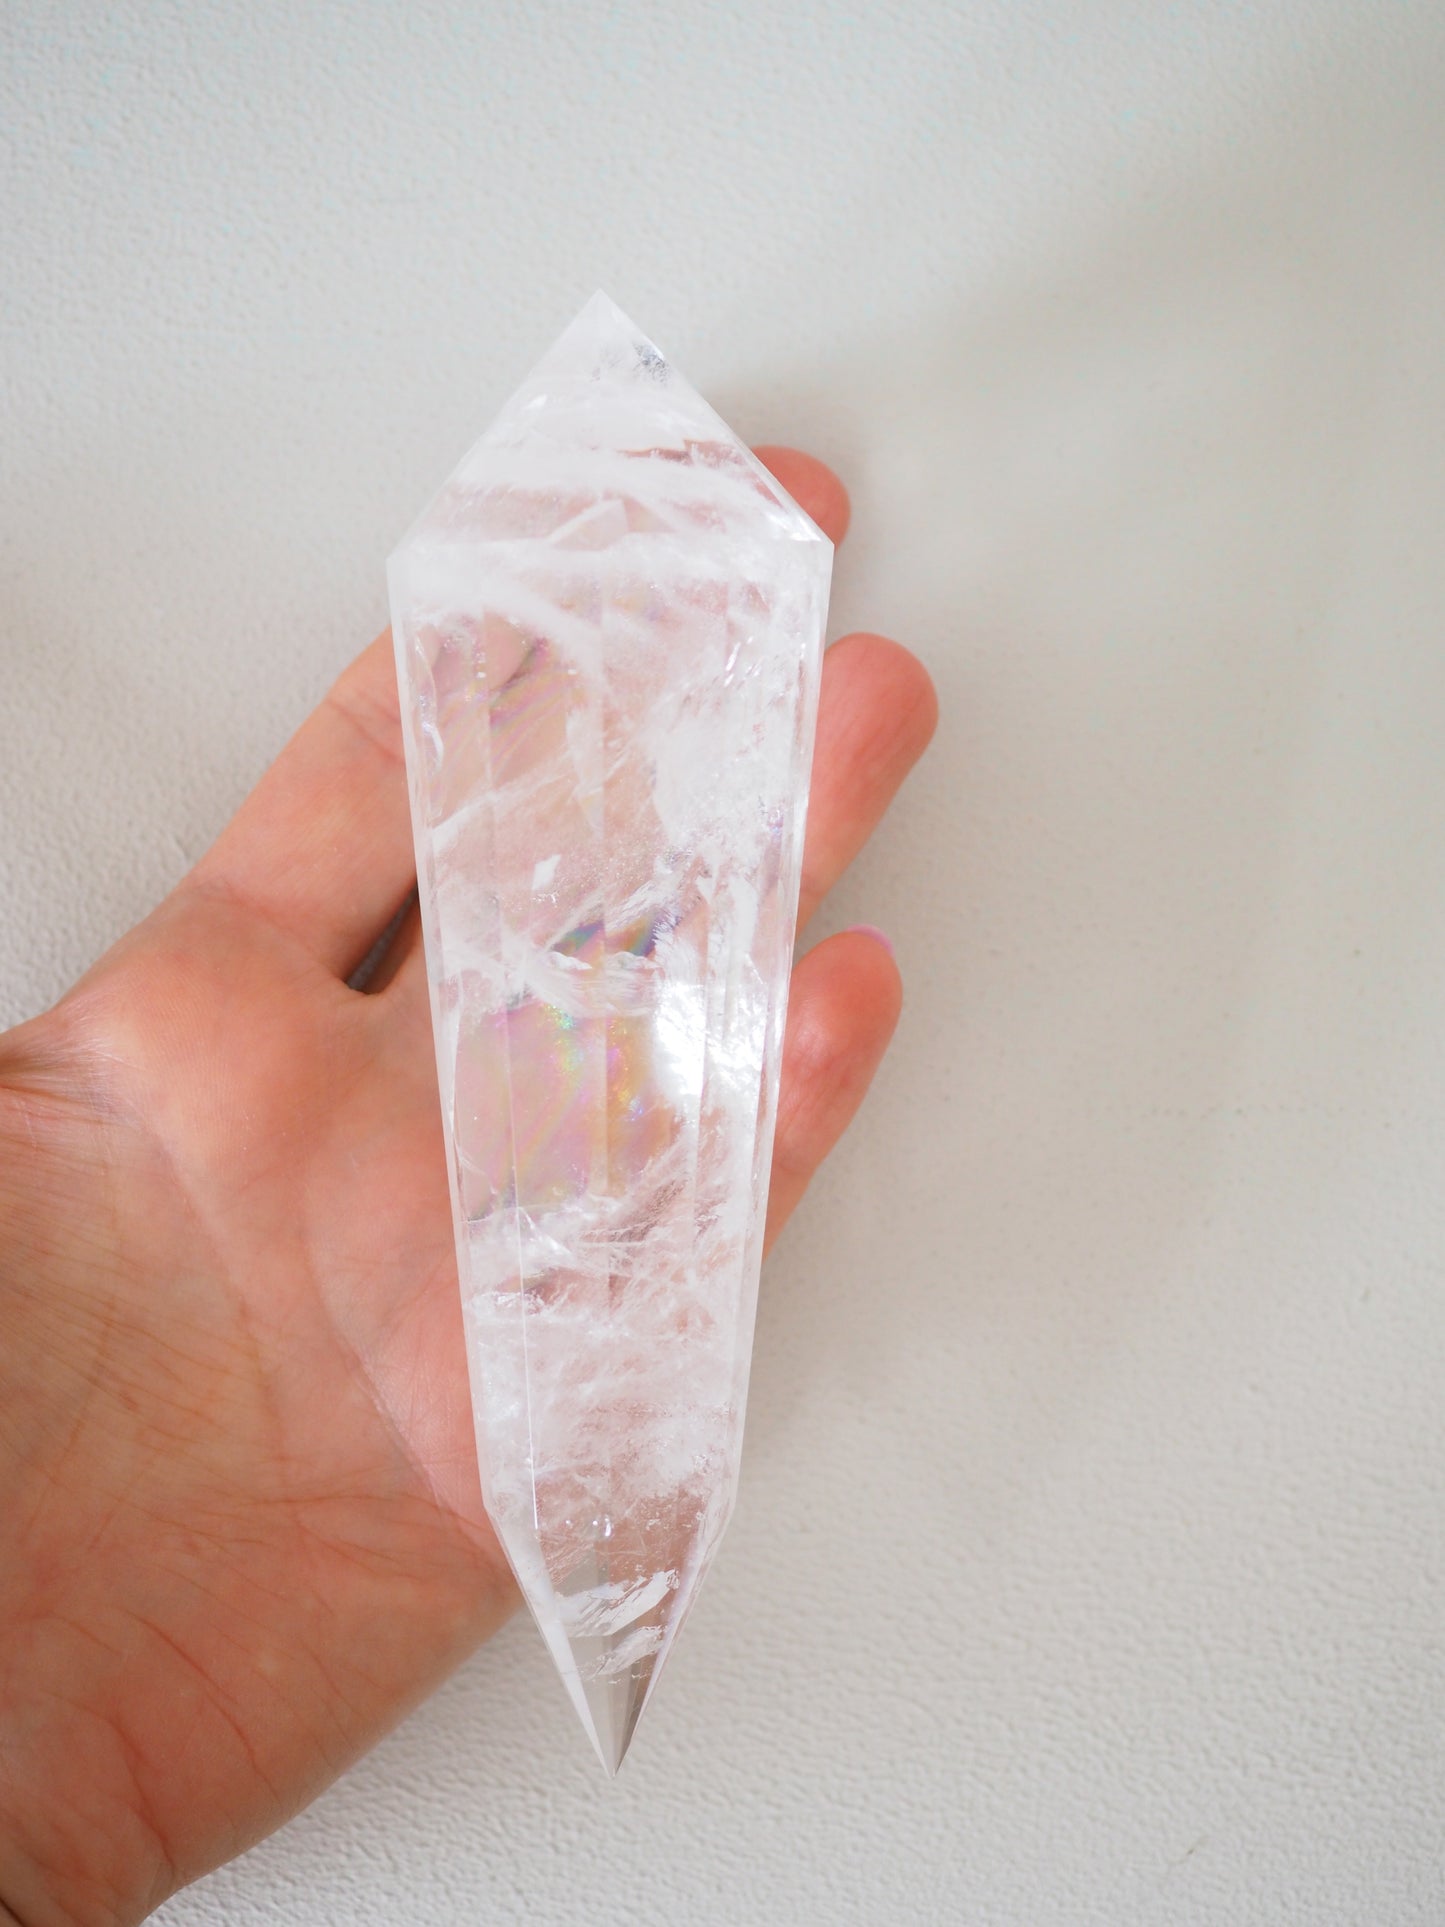 Bergkristall Vogel Kristall mit Regenbögen 12 Seiten ca. 15cm 270g [1] - aus Brasilien Handgeschliffen